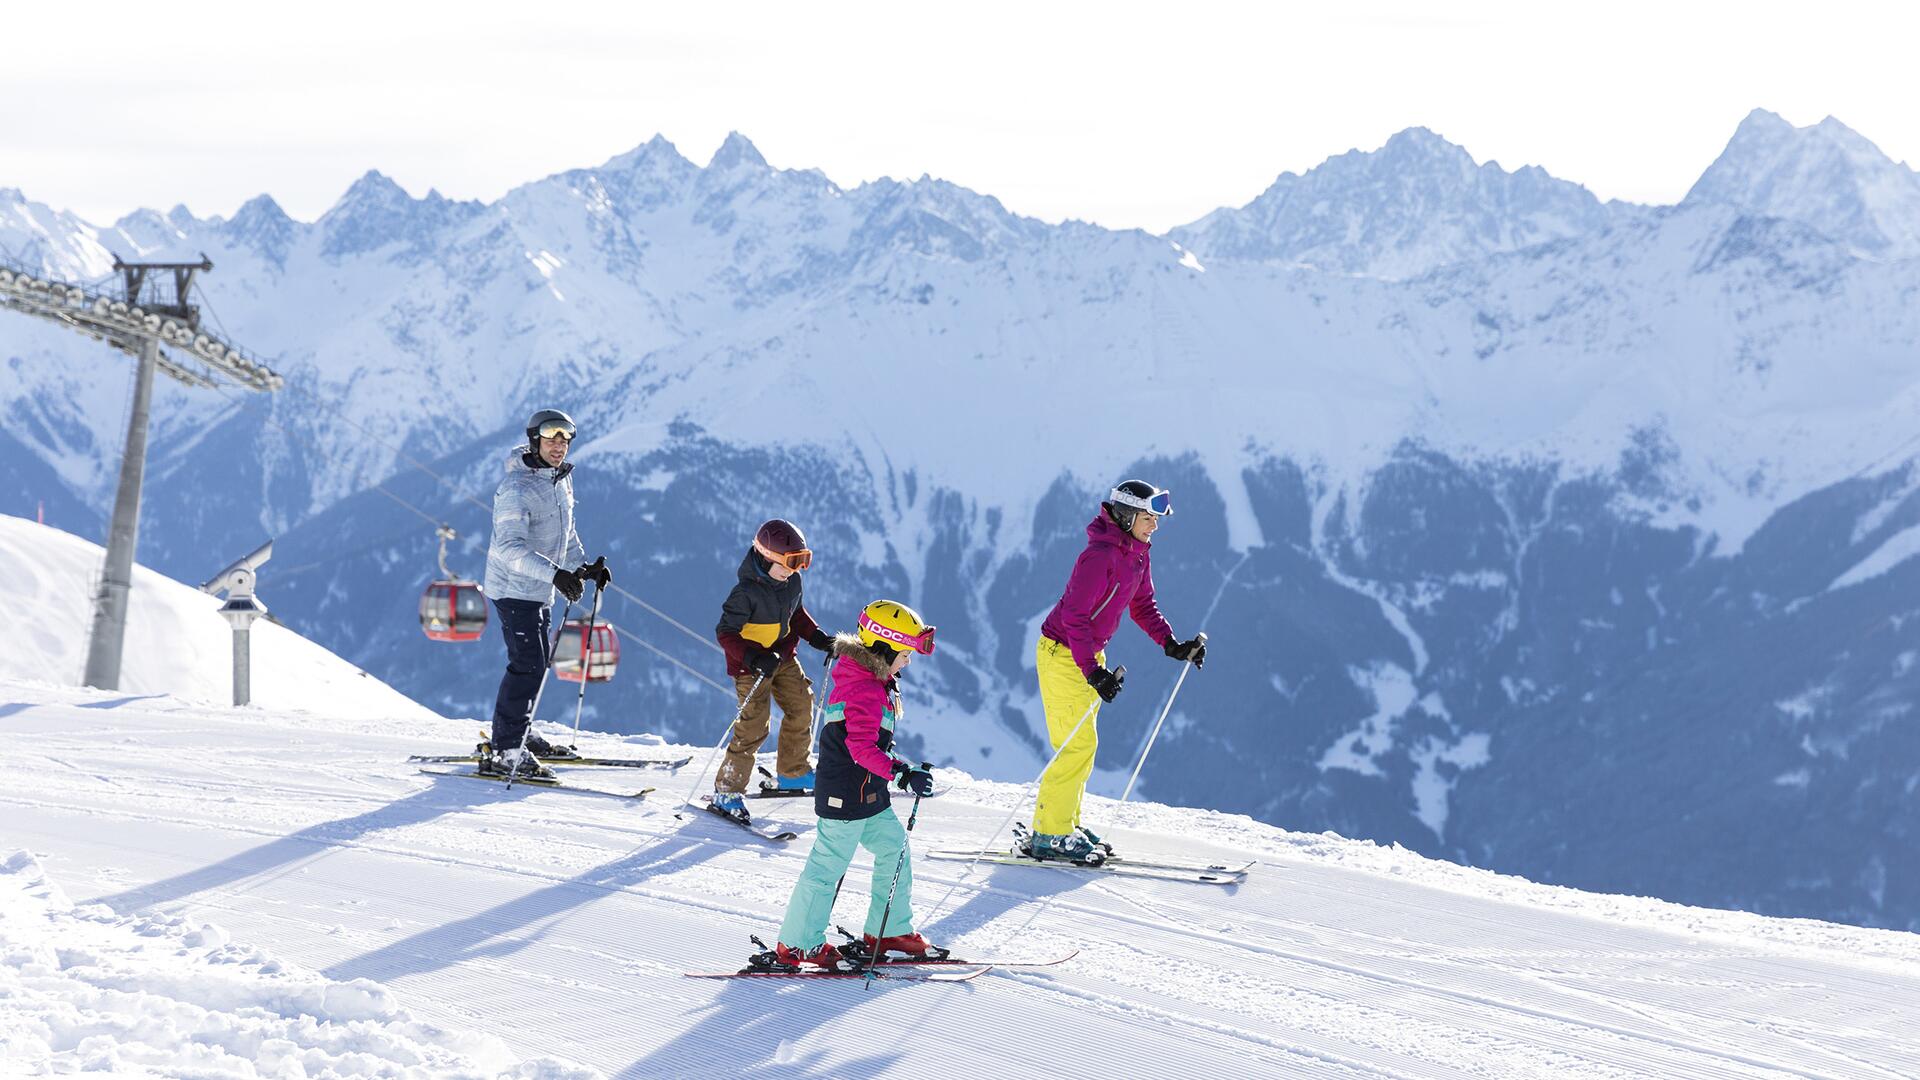 Family-skiing in Serfaus-Fiss-Ladis | © Serfaus-Fiss-Ladis Marketing GmbH, danielzangerl.com